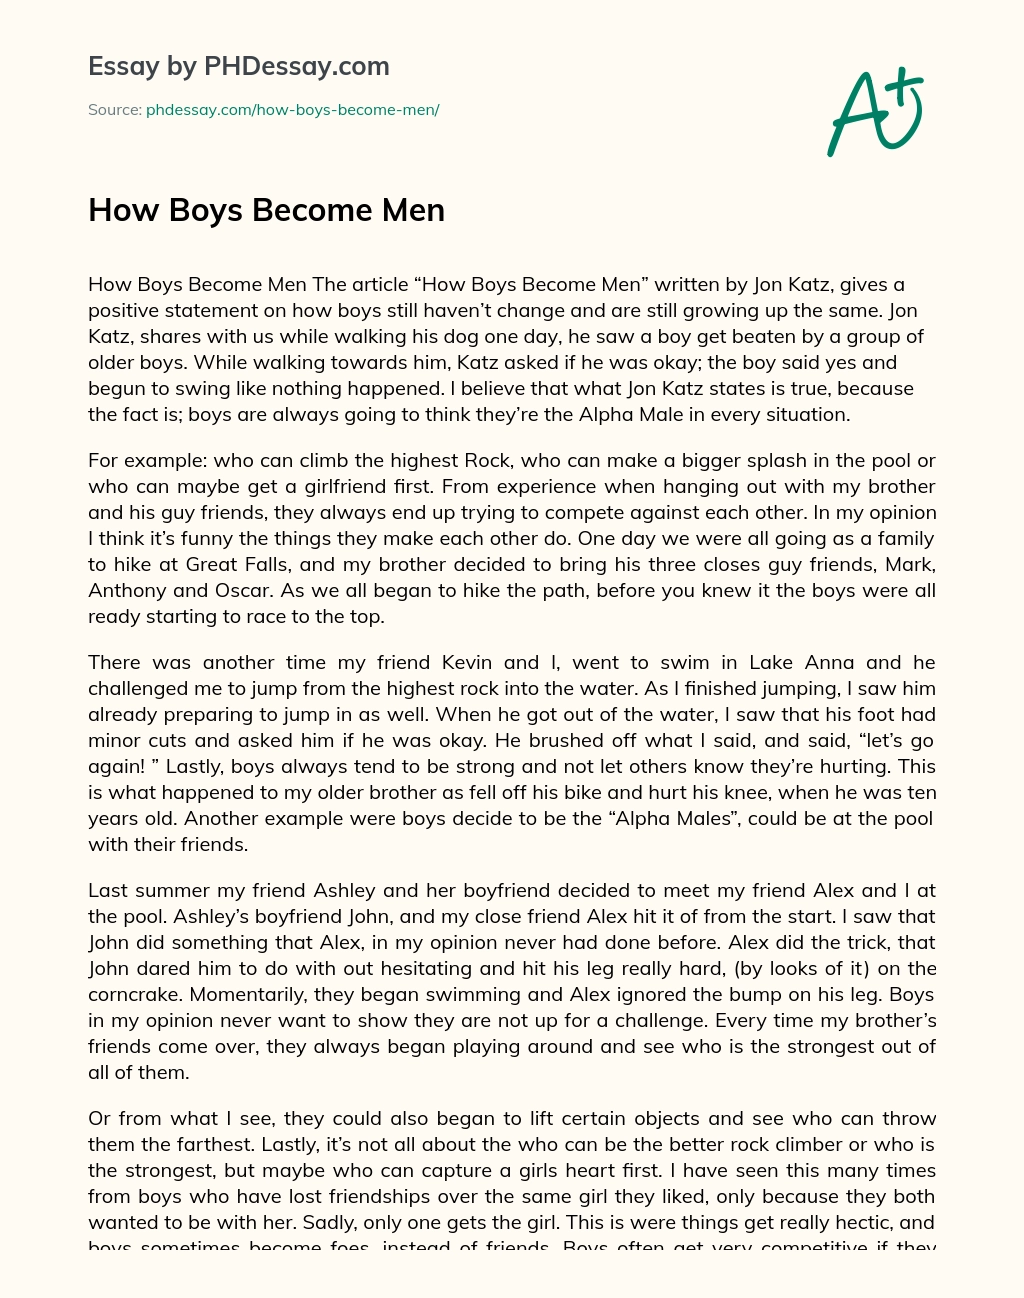 How Boys Become Men essay